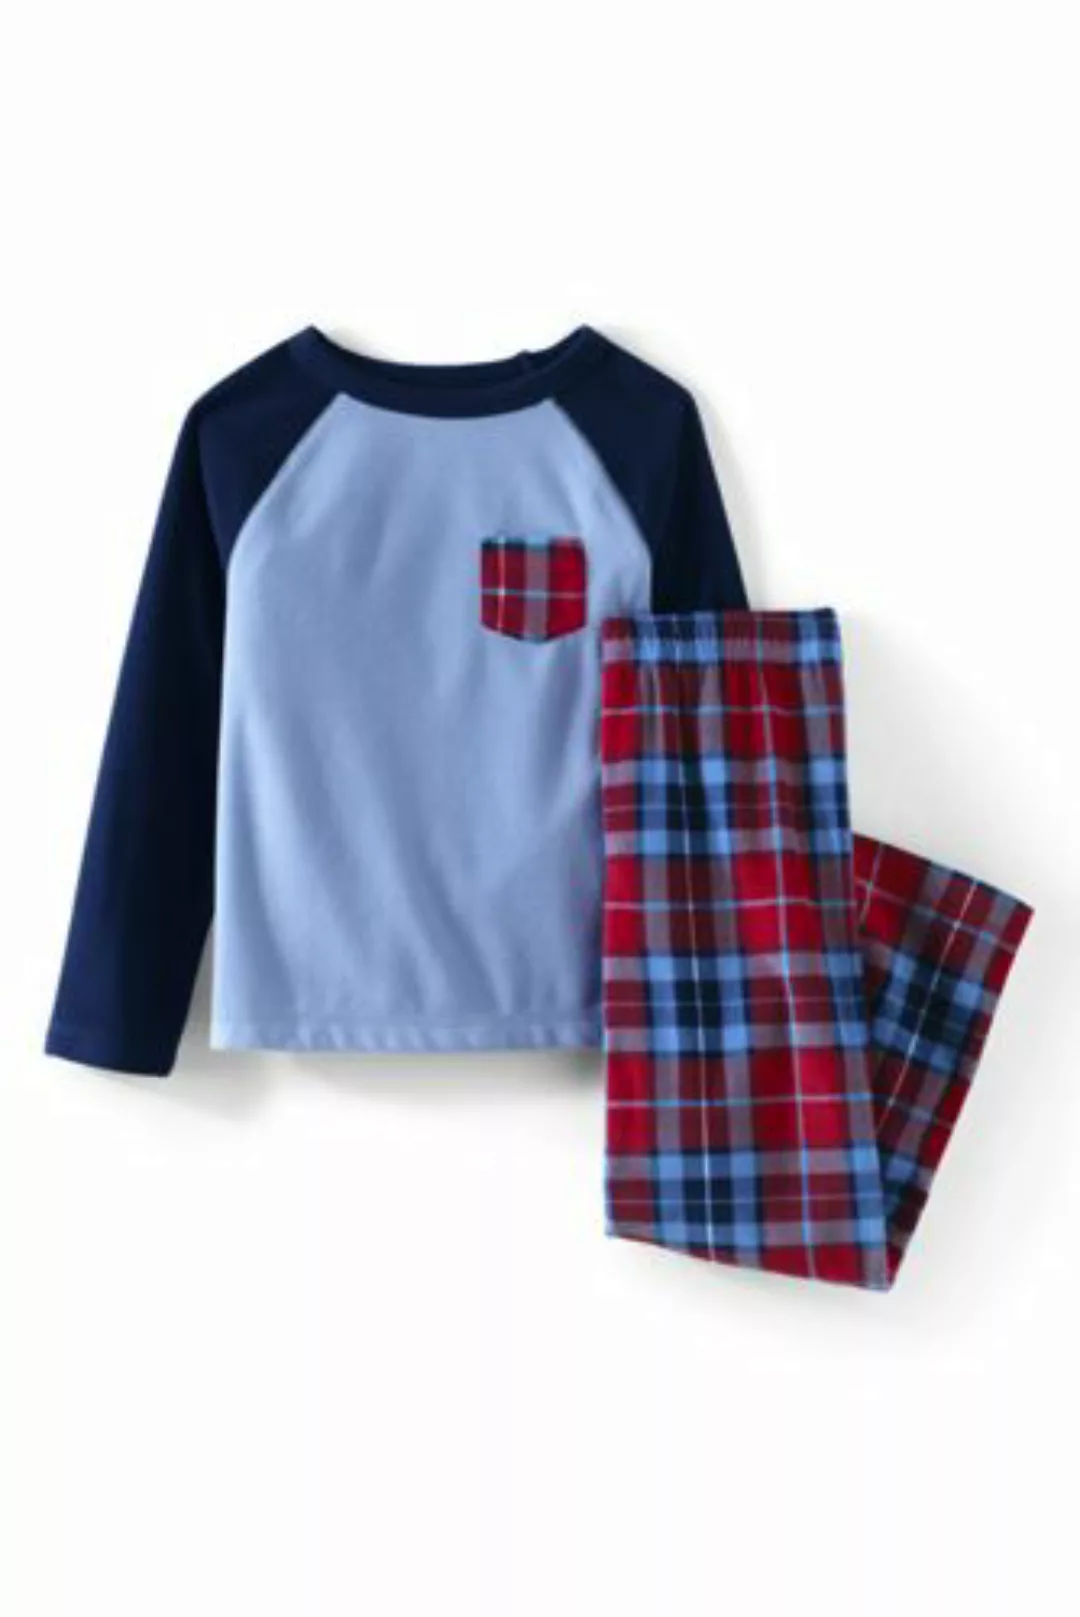 Pyjama-Set aus Fleece, Größe: 116-122, Rot, by Lands' End, Satt Rot Multi K günstig online kaufen